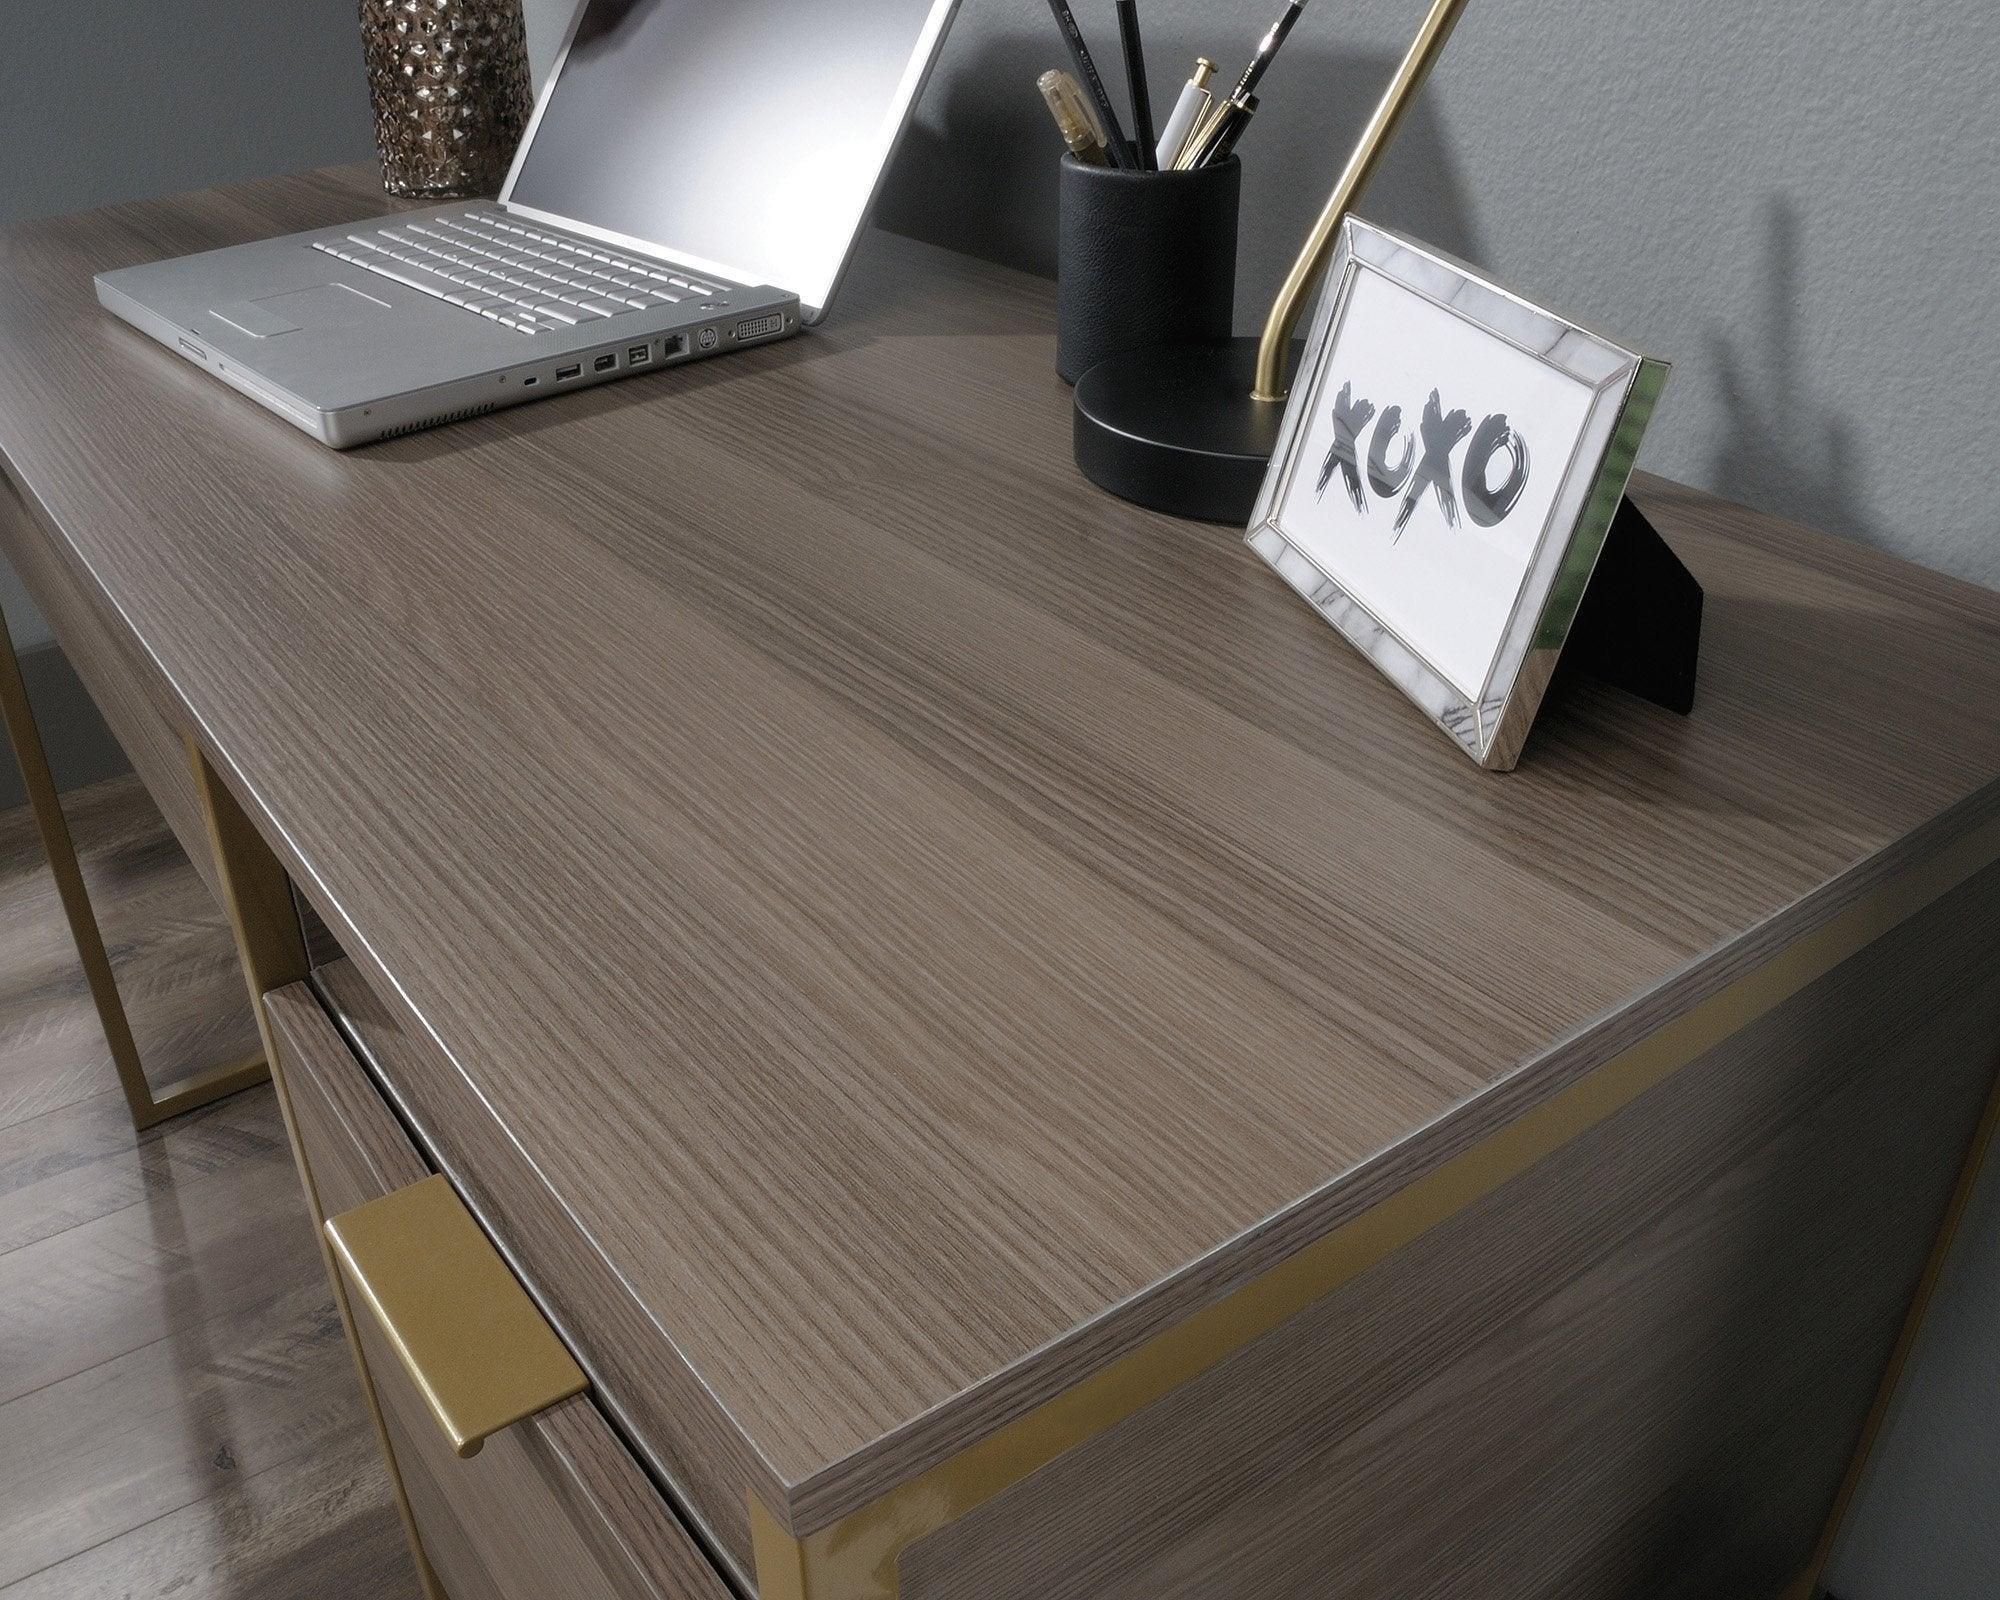 Lux desk - image 8